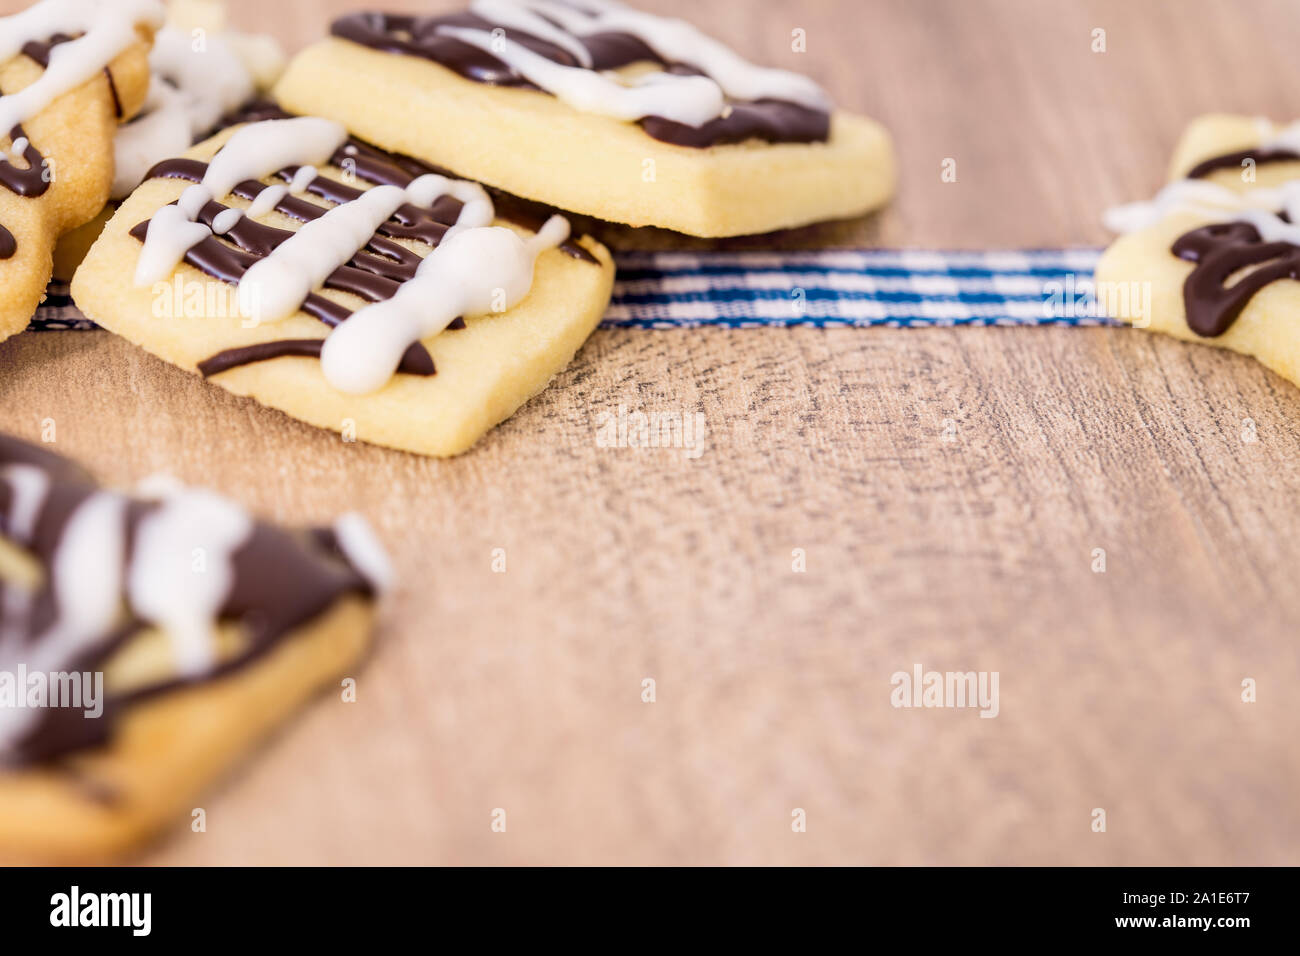 Amende selfmade avec cookies chocolat blanc et noir sur fond de bois, copyspace Banque D'Images